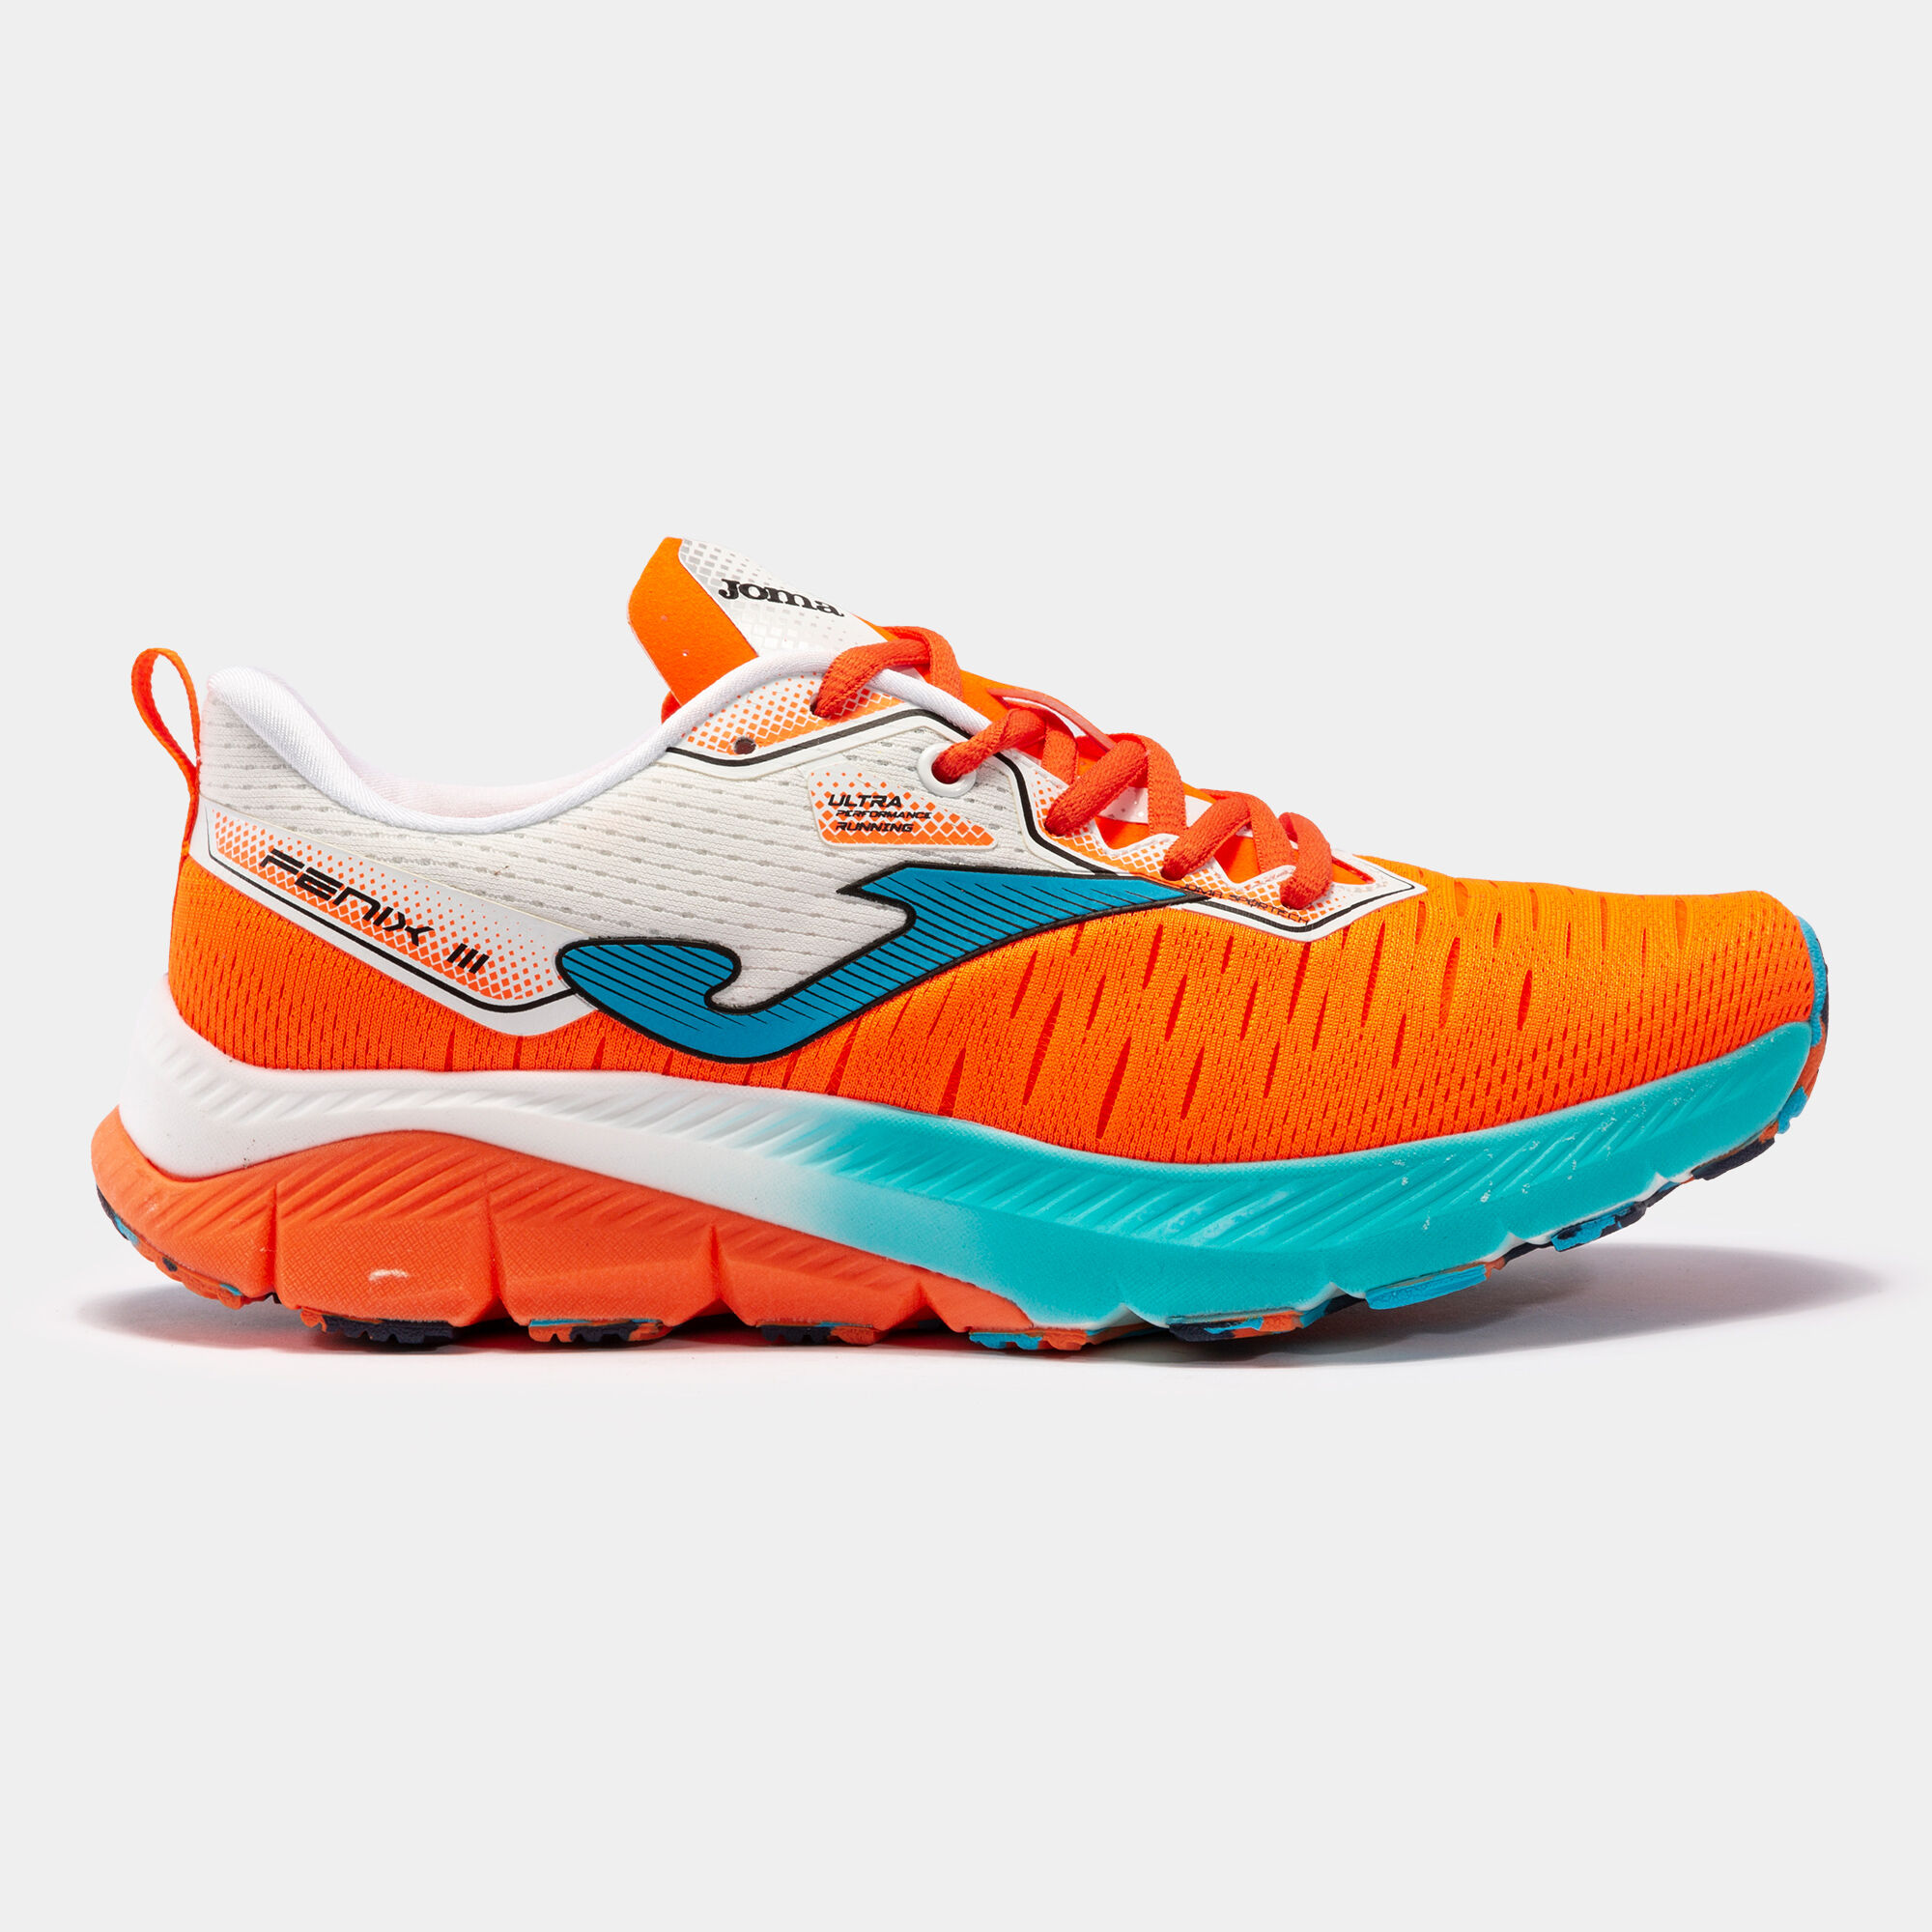 Chaussures running Fenix 22 homme orange fluo bleu ciel